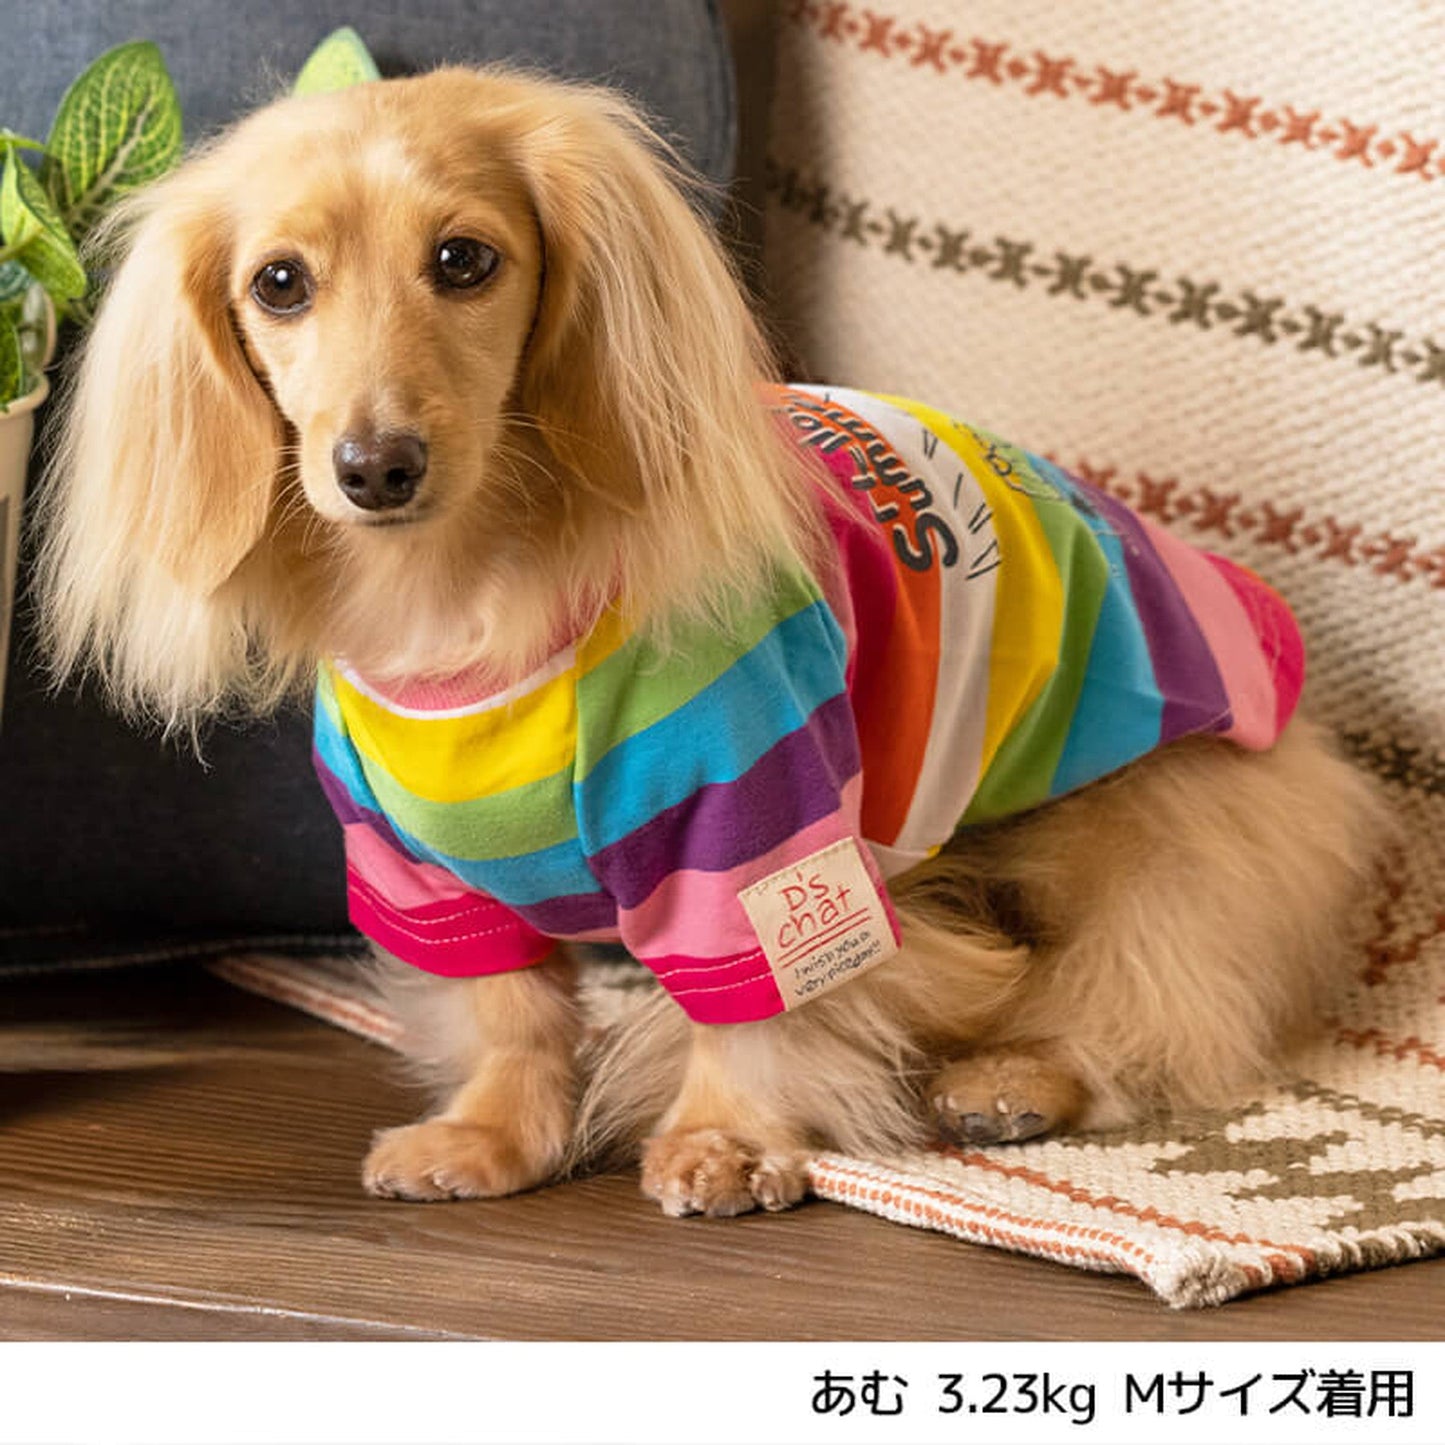 マルチボーダーTシャツ XS/S/M/L D's Chat-ディーズチャット- 犬服 ドッグウェア 小型犬 トイプードル チワワ ポメラニアン DS22SS ds161127-1